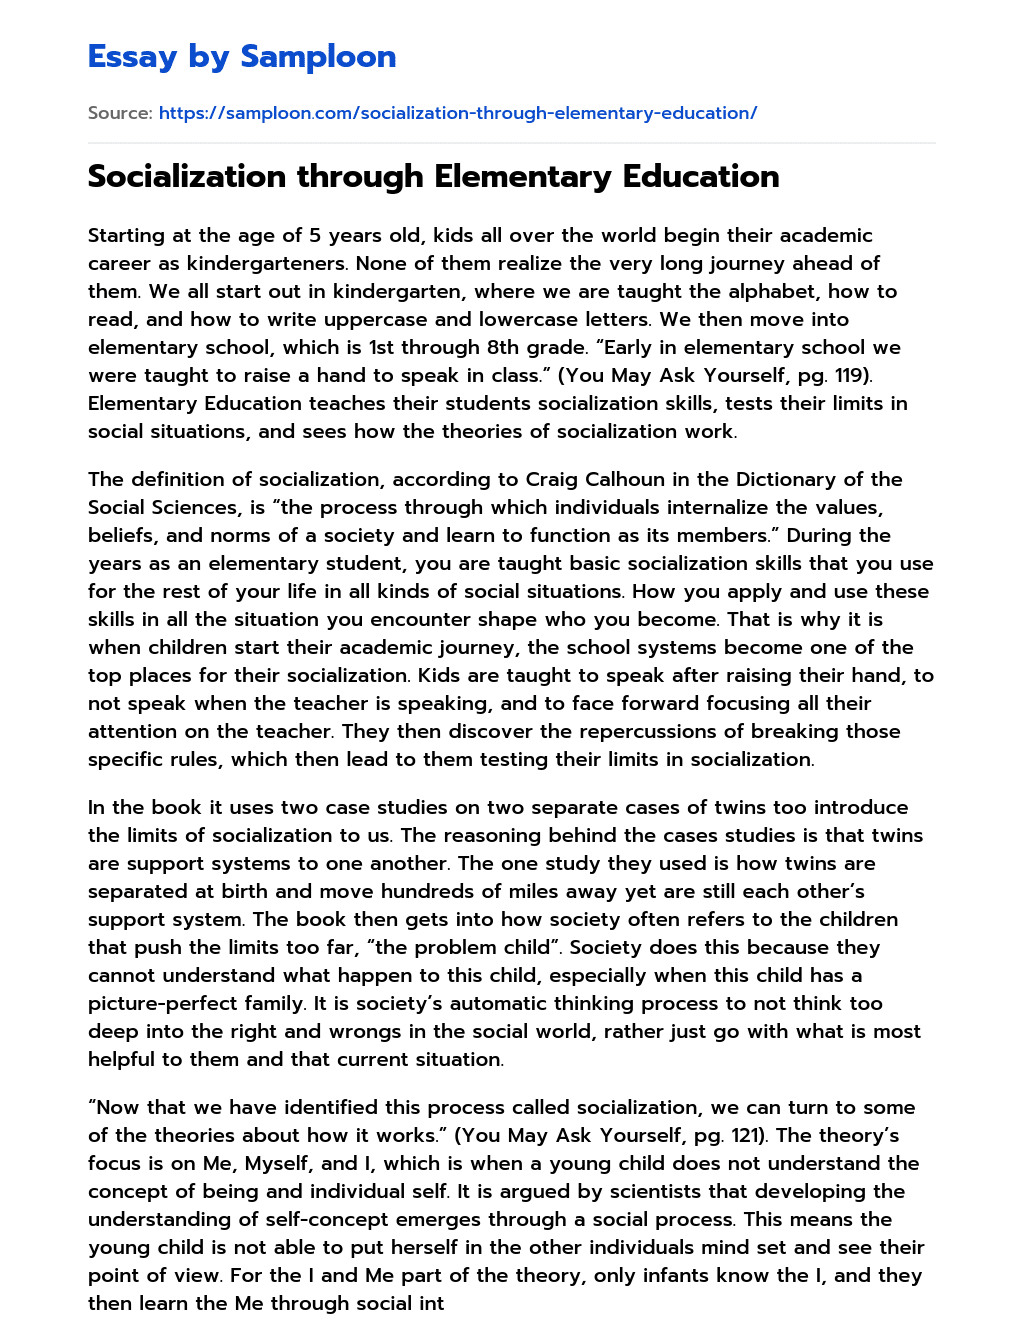 Socialization through Elementary Education essay